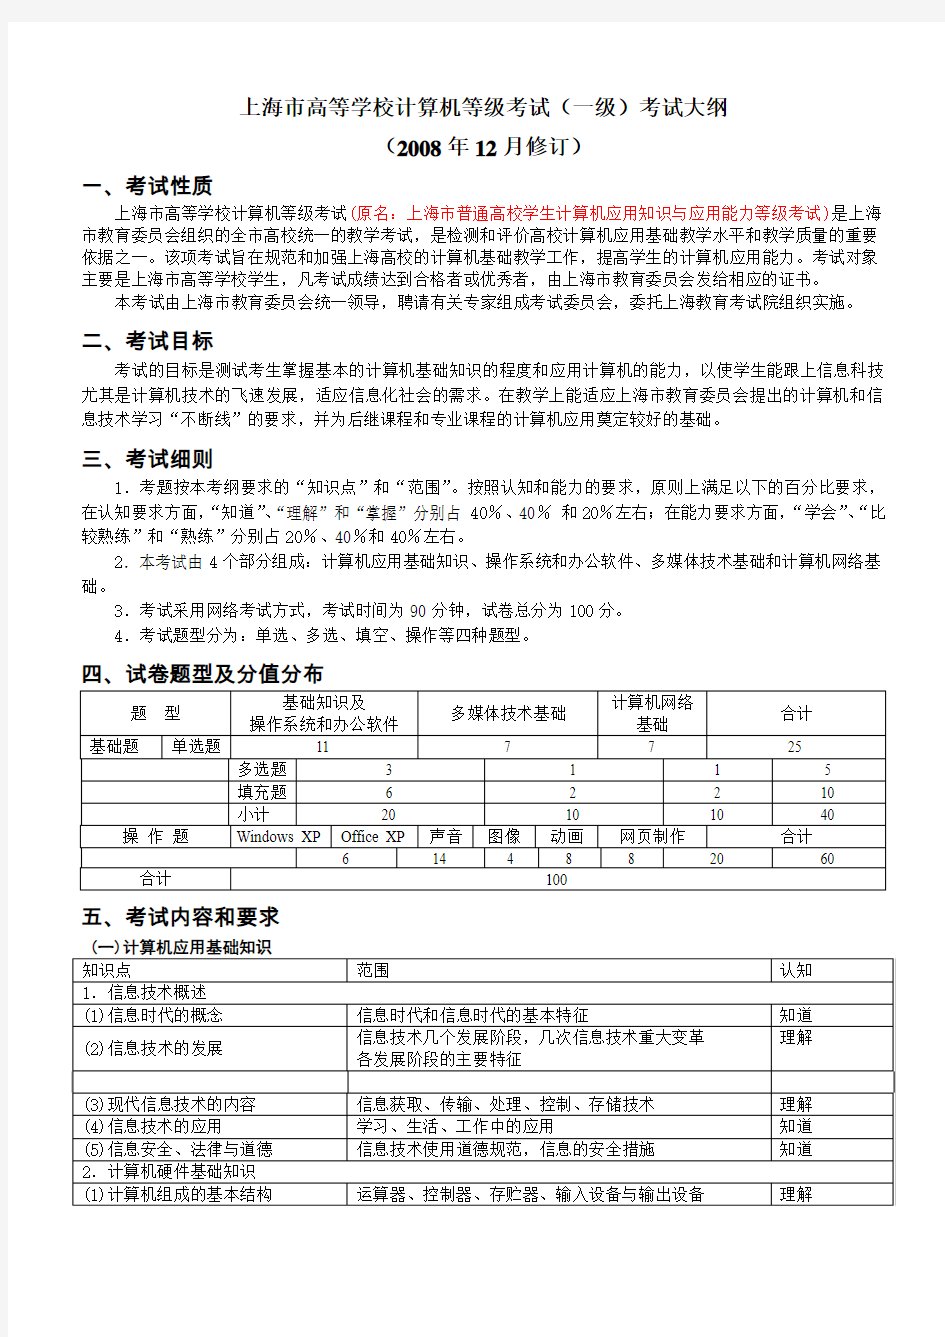 上海市普通高校计算机等级考试考纲